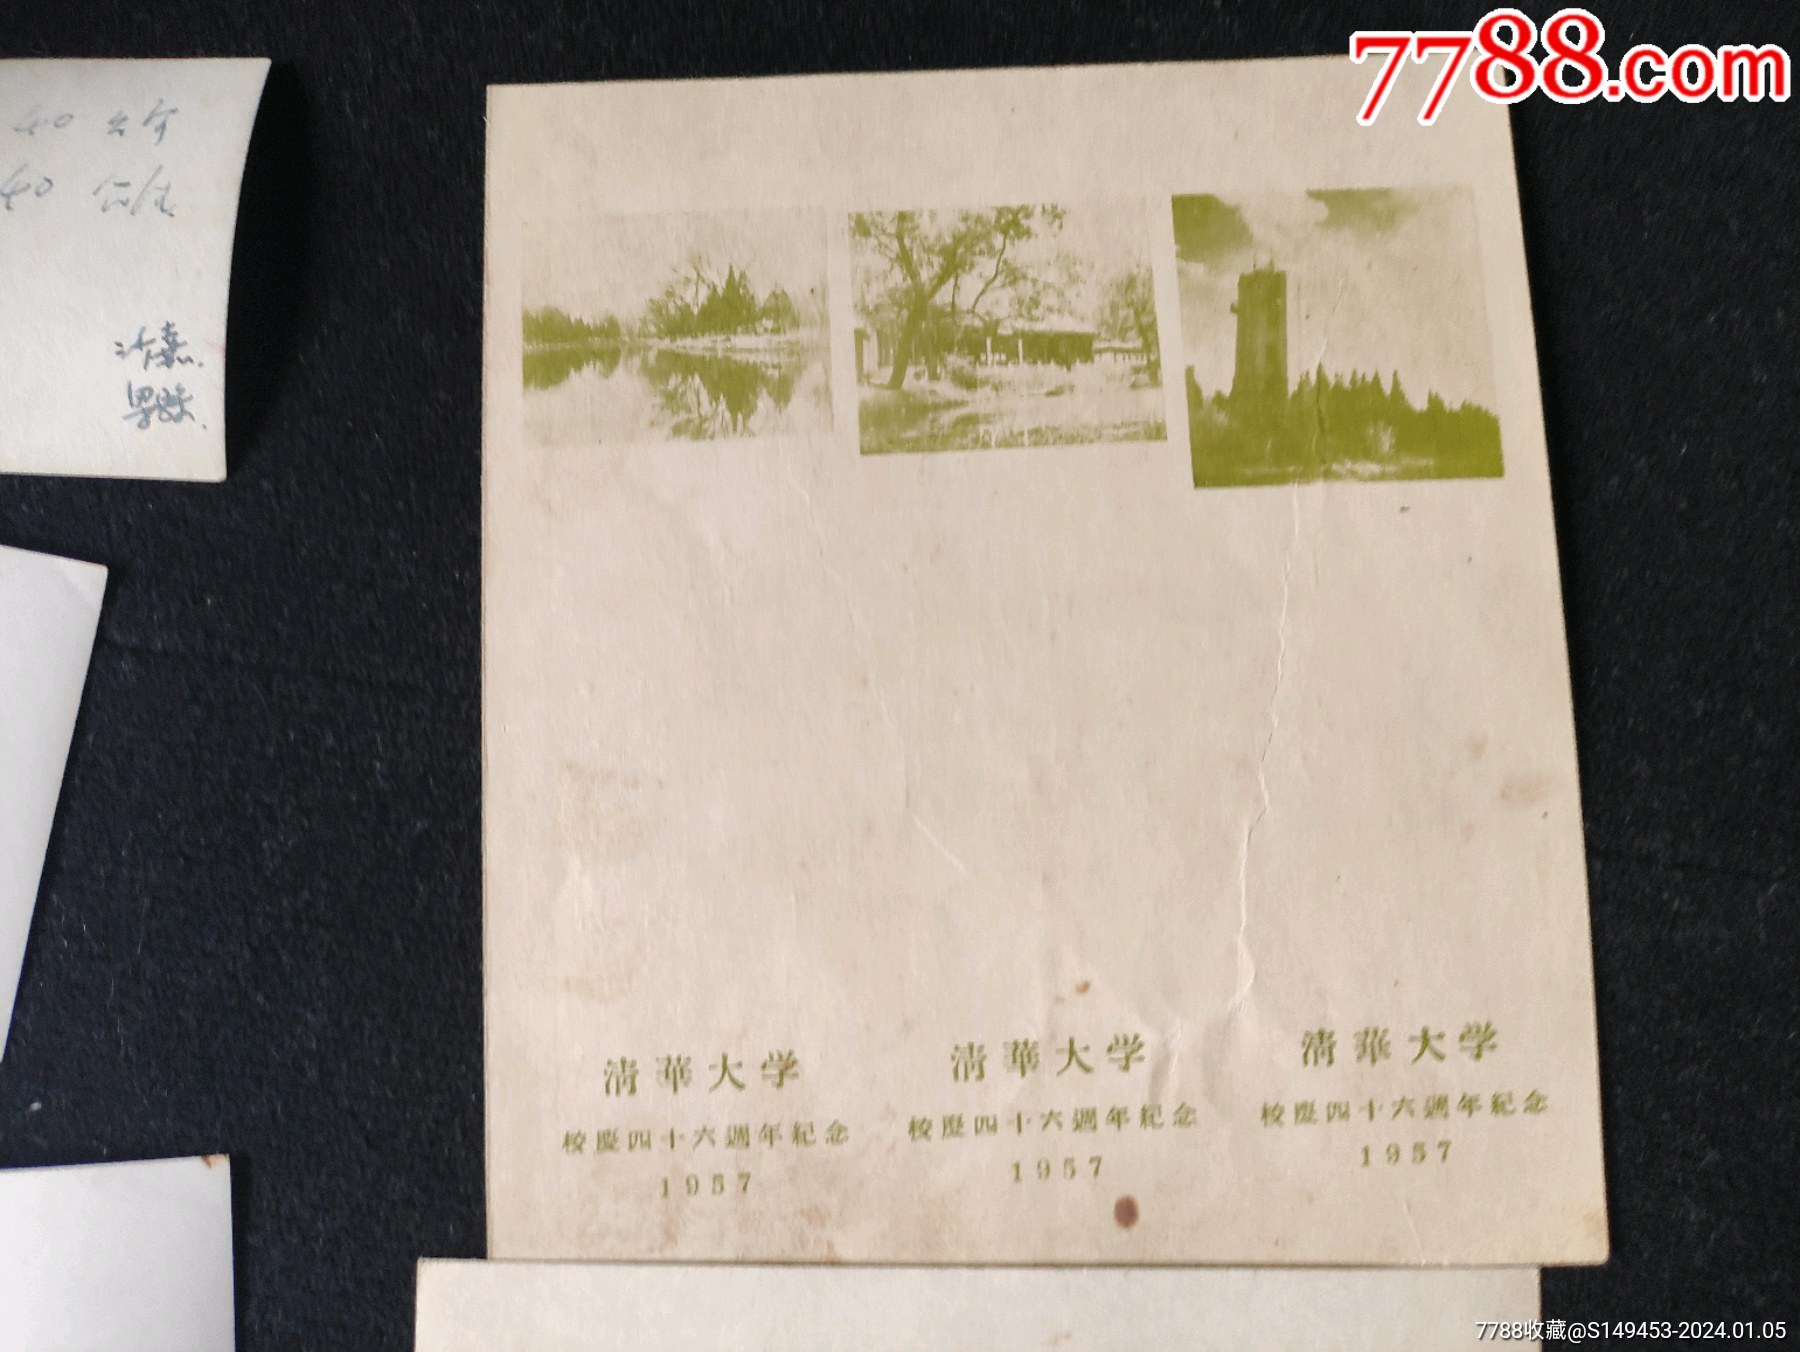 清華校慶46周年(1957)書簽設計原稿一組_價格355元_第7張_